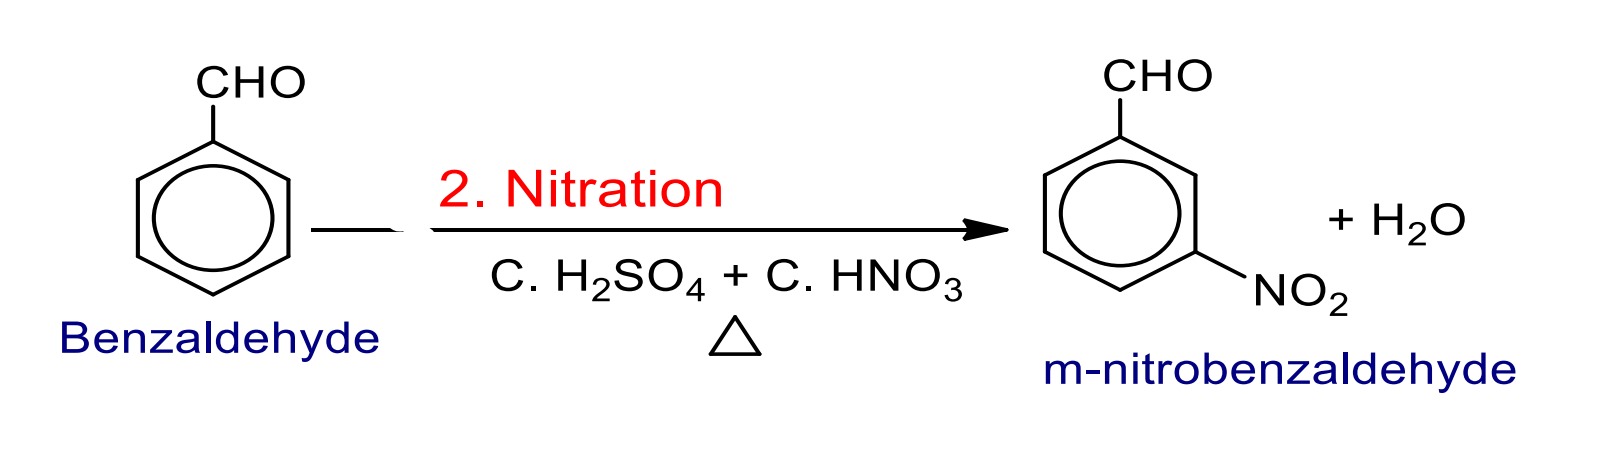 nitratation aldehyde ketone